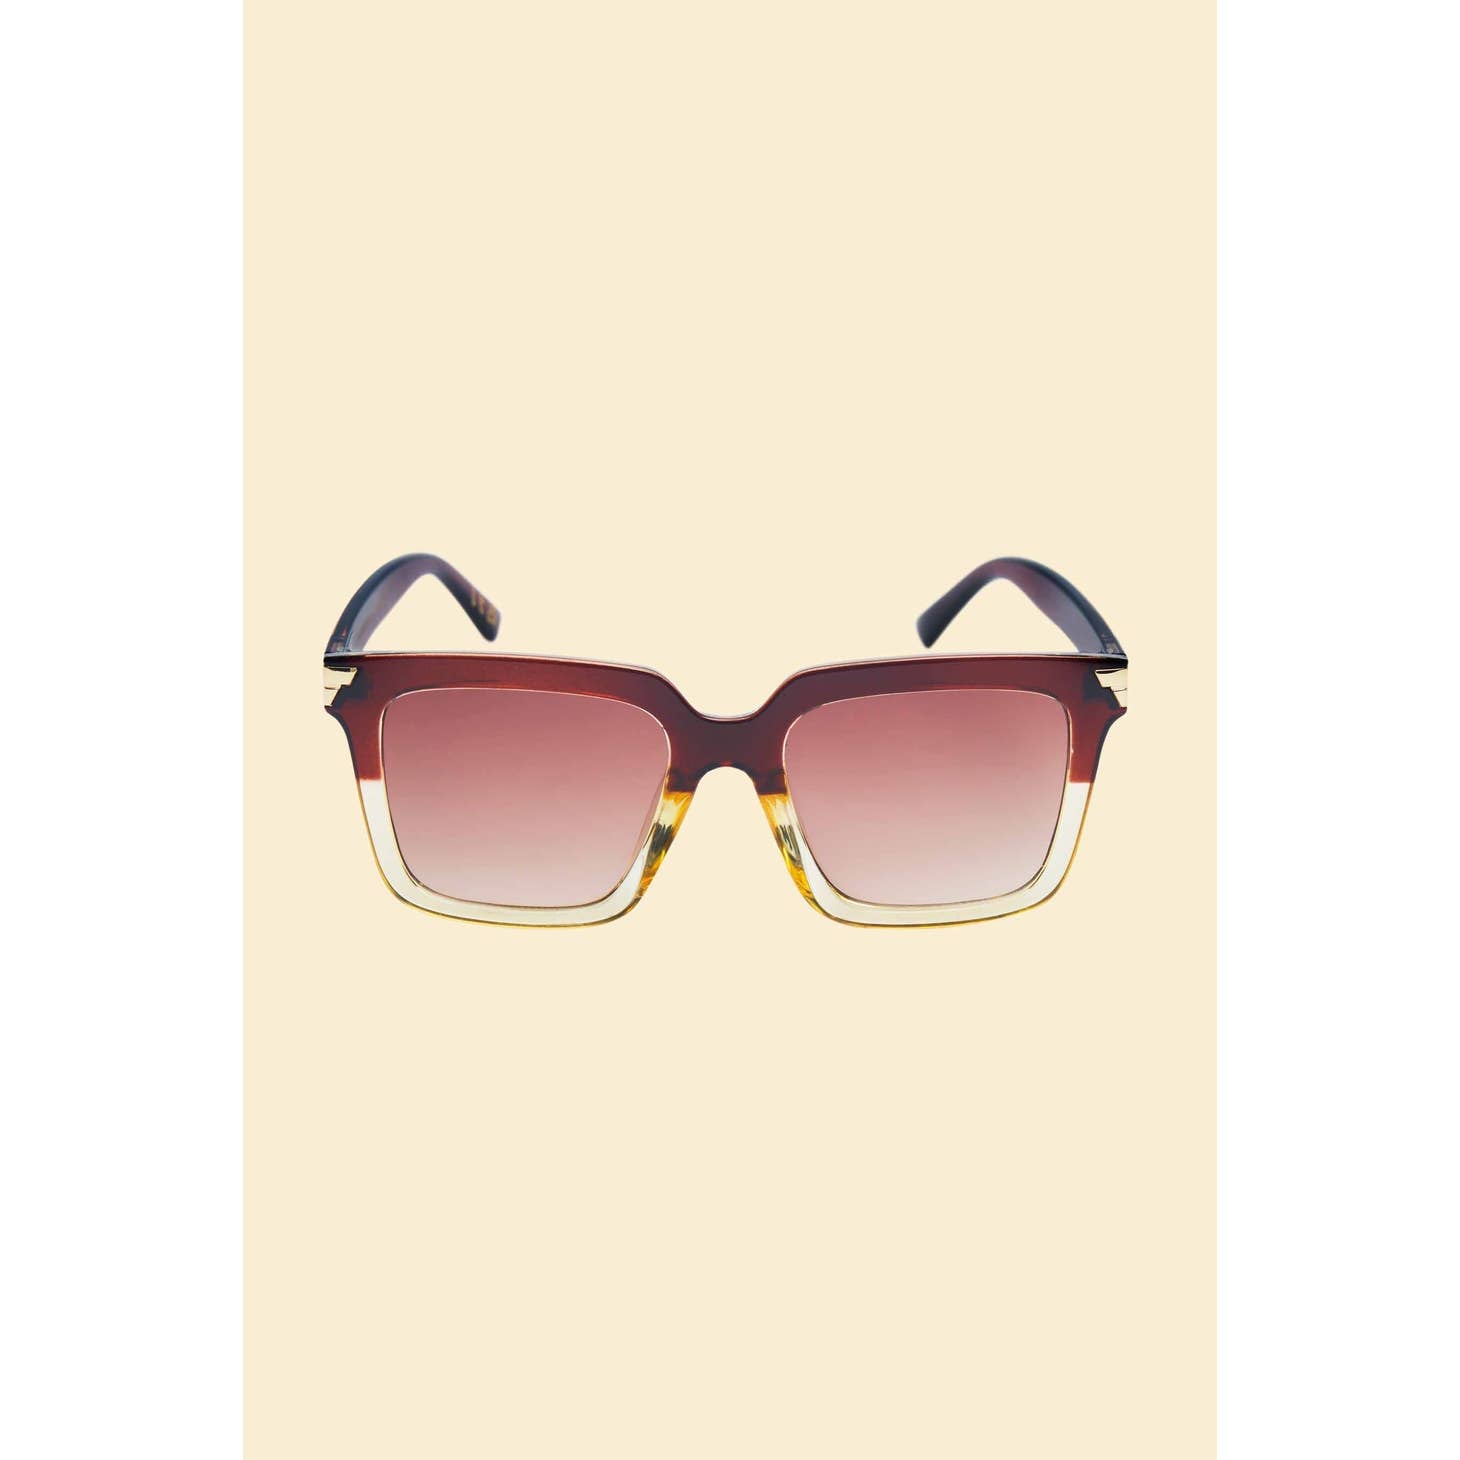 Luxe Fallon - Mahogany/Nude Sunglasses - Presell